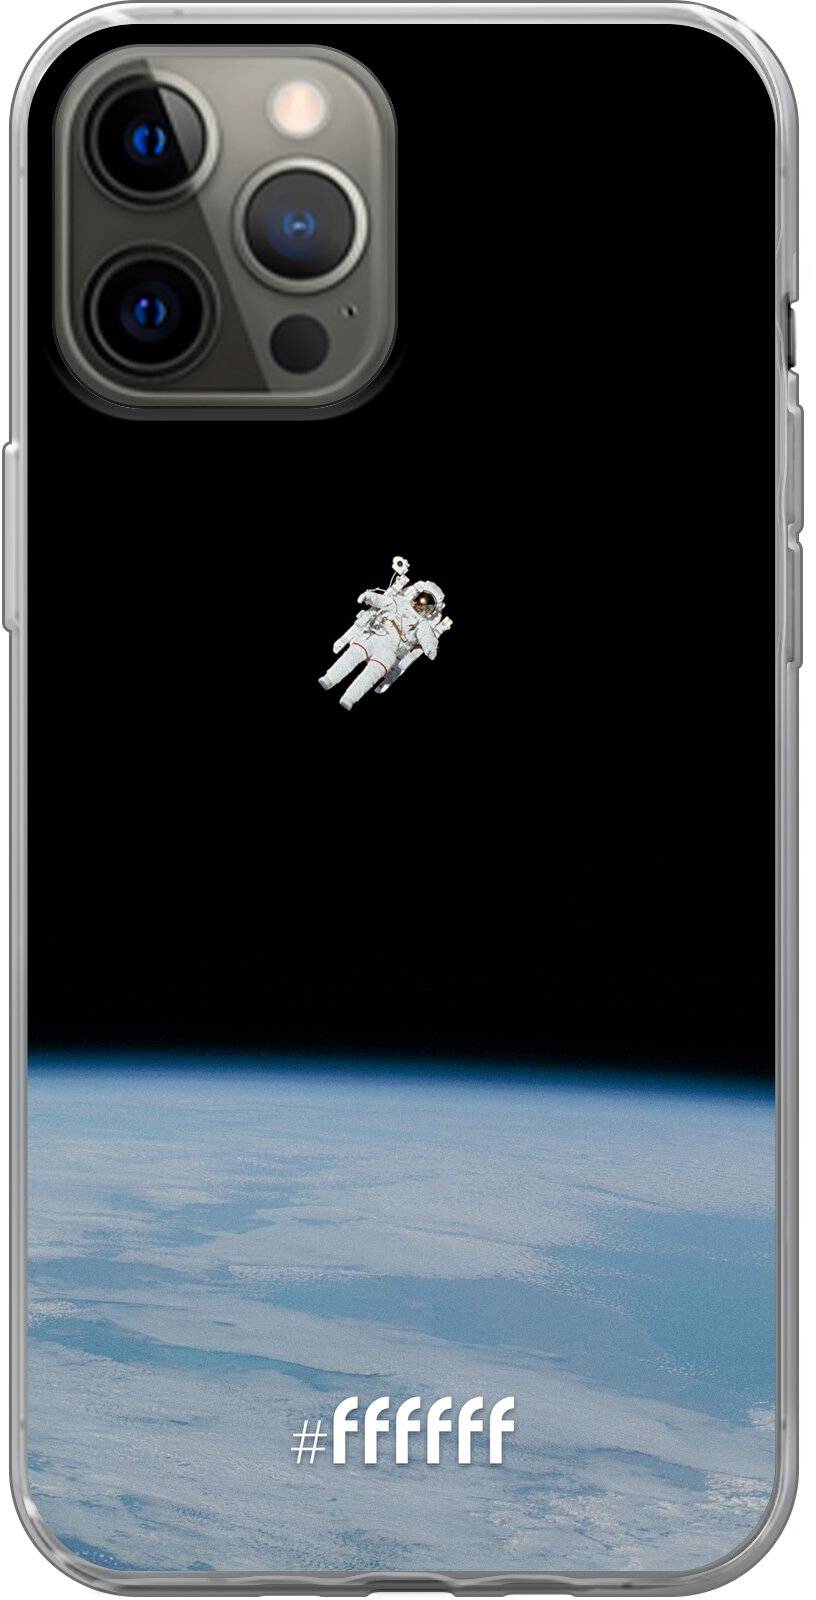 Spacewalk iPhone 12 Pro Max